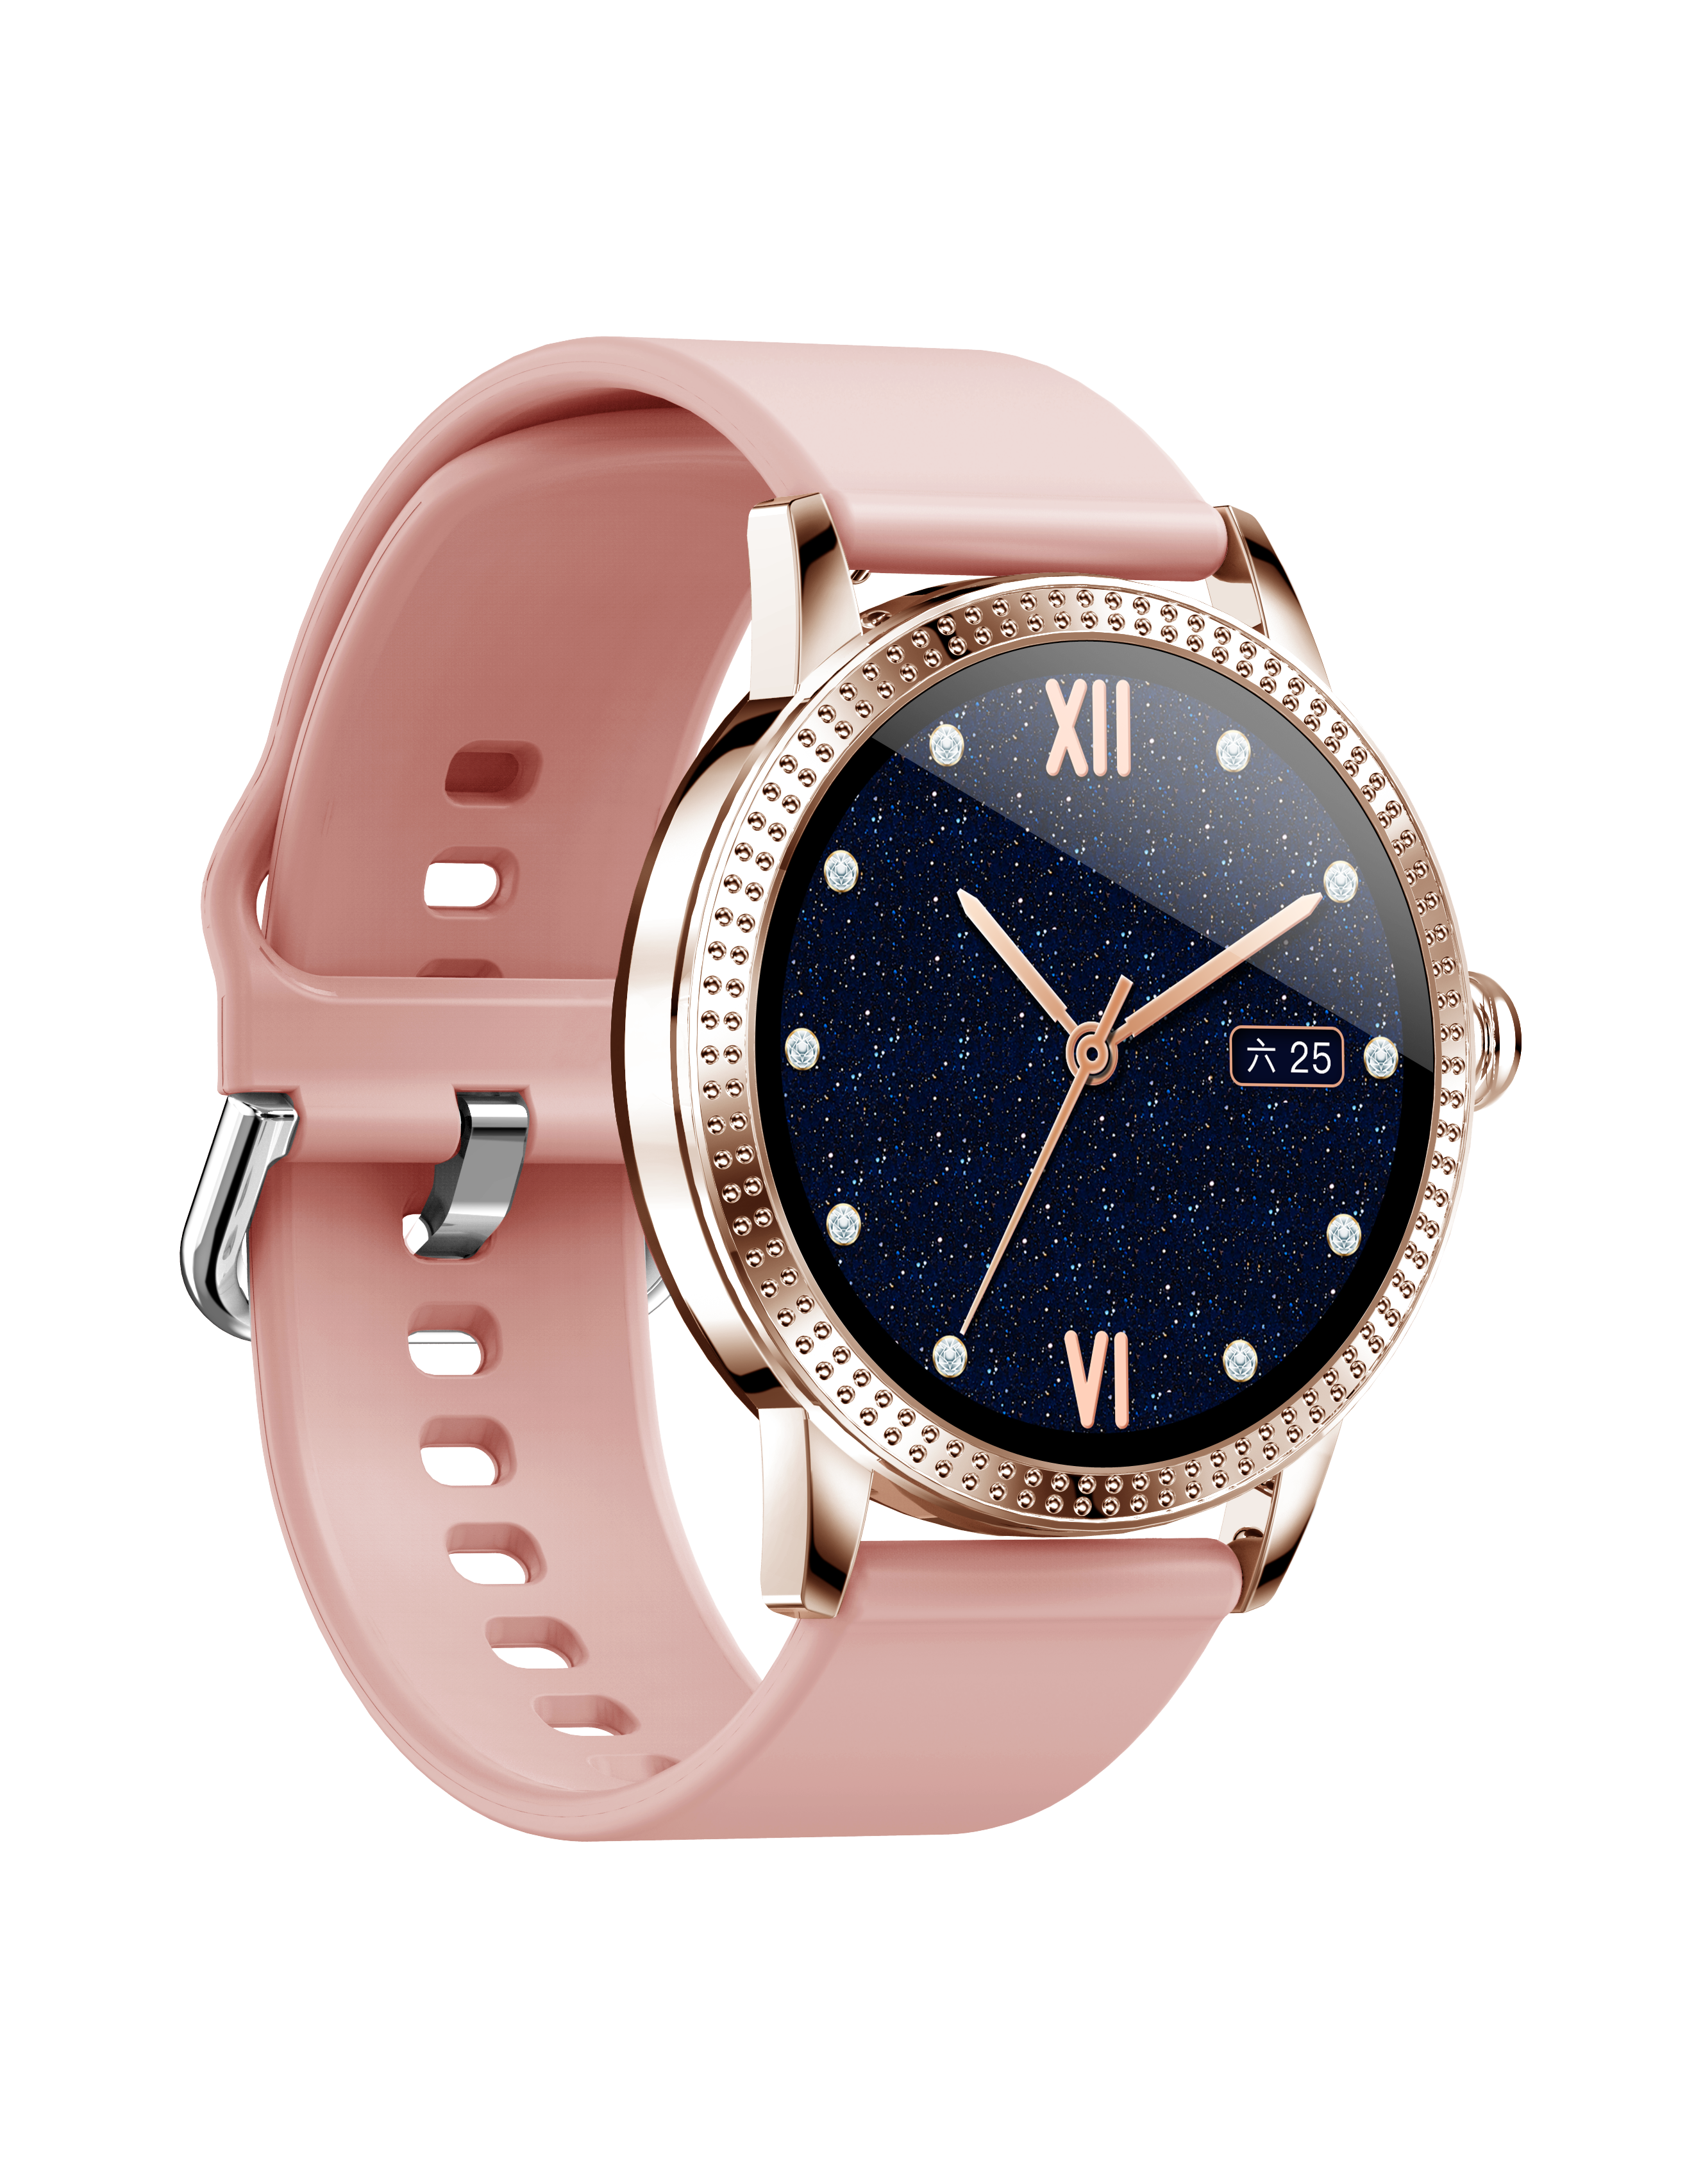 Reloj Inteligente Smart Watch Dama Mujer 3 Diseños Colores